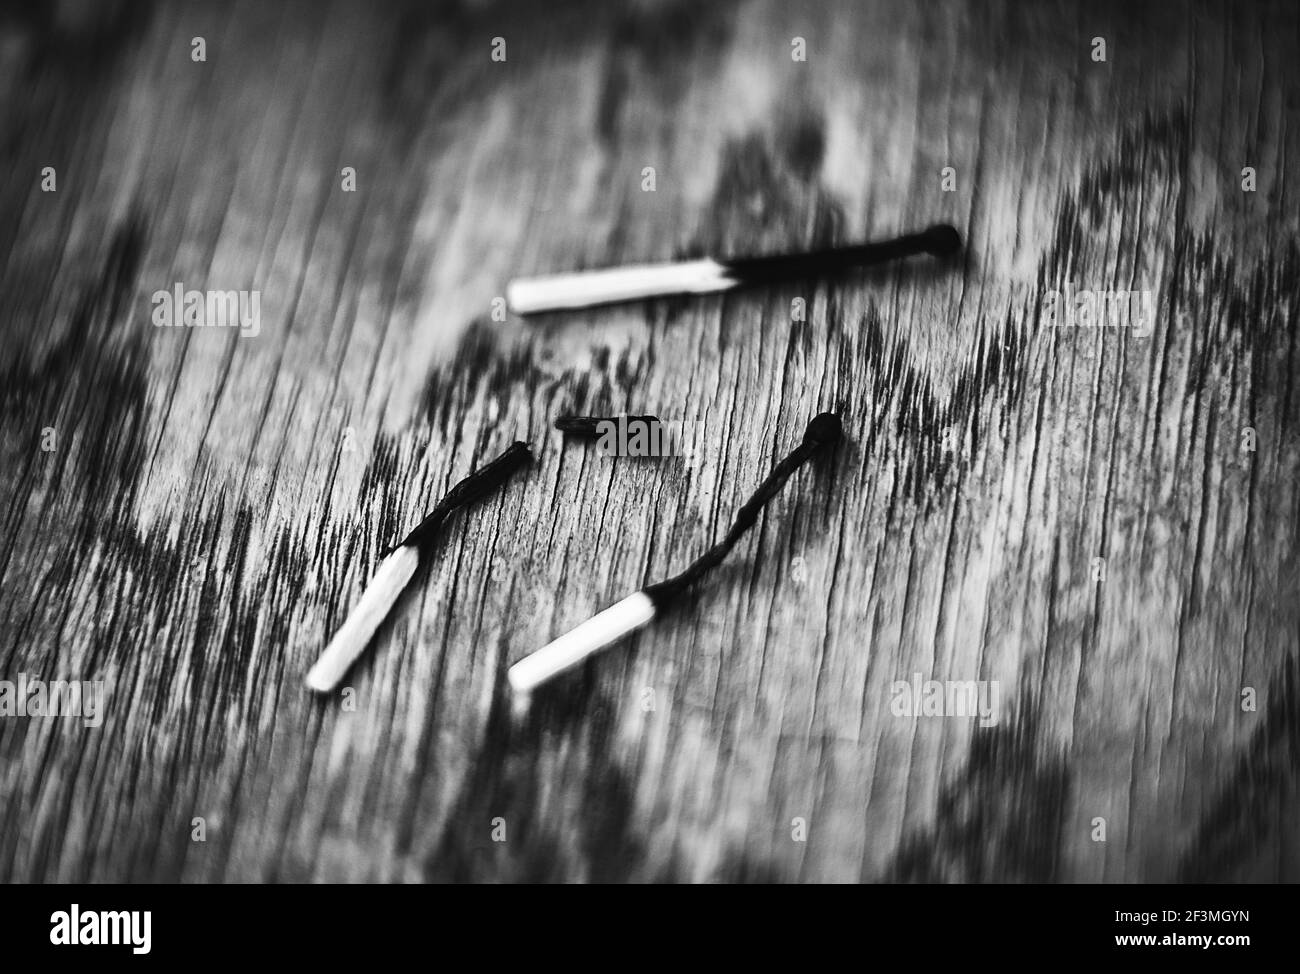 Una imagen en blanco y negro de tres partidos quemados sobre una mesa de madera. Uno de los partidos se quemó y se rompió. Peligro. Foto de stock